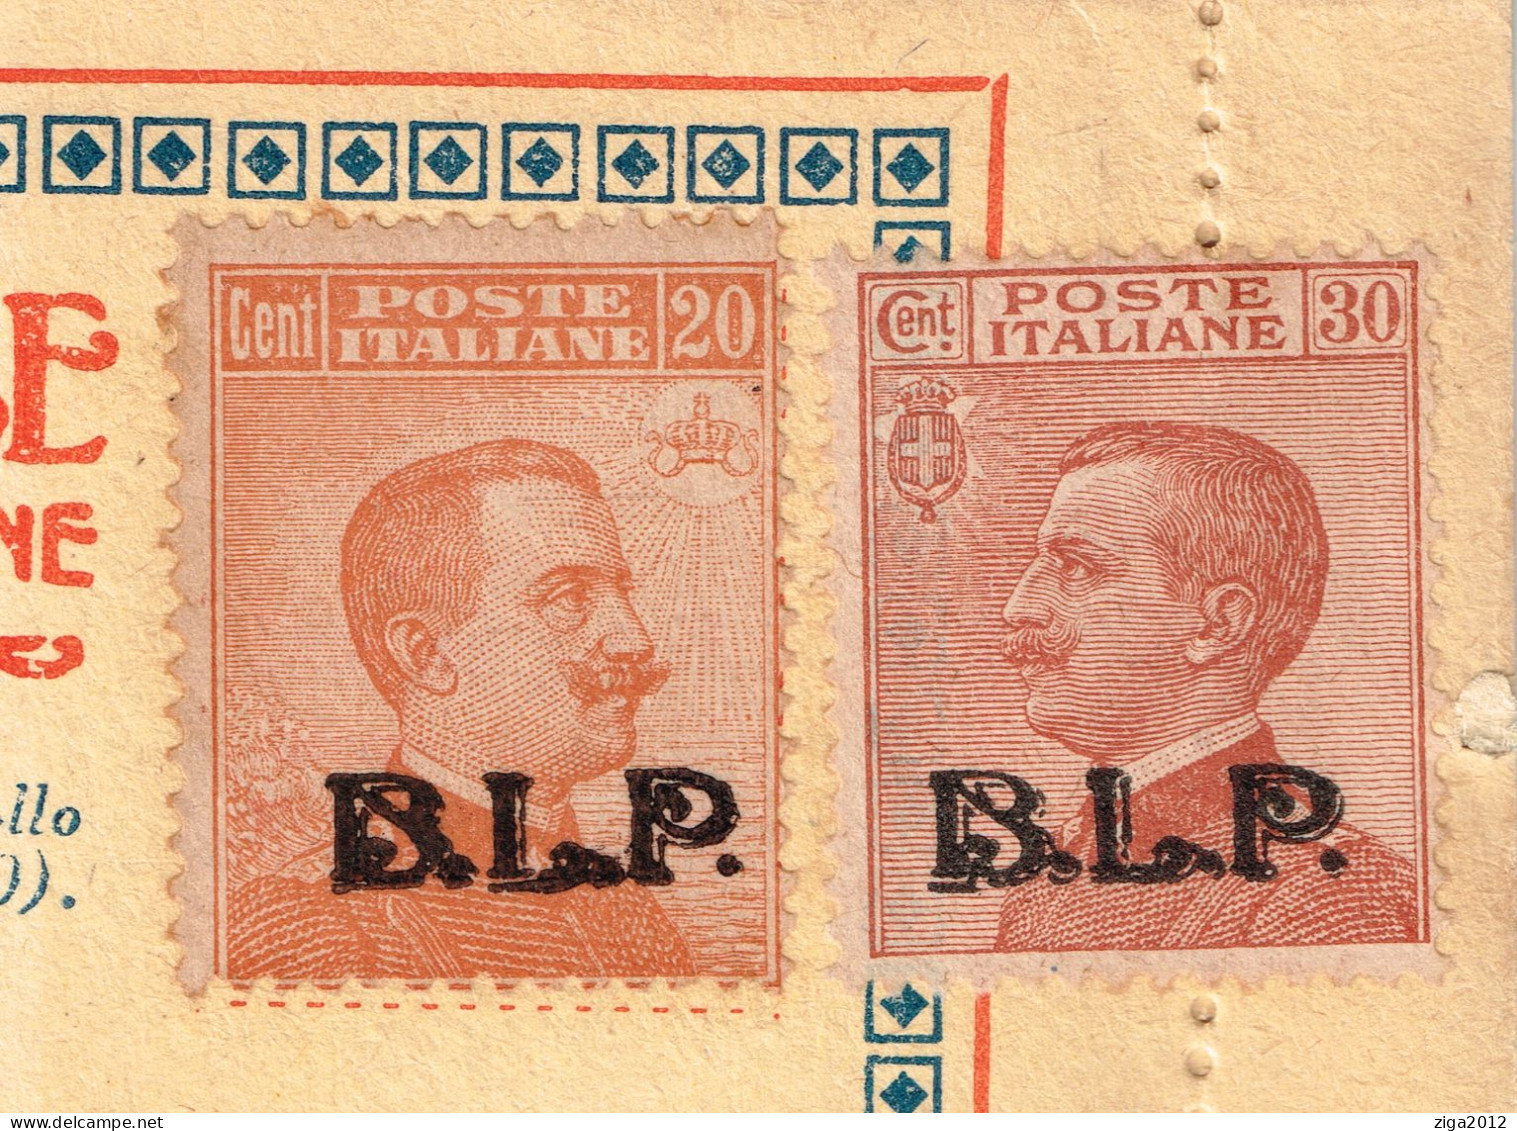 ITALY 1923 B.L.P. BUSTA LETTERA POSTALE CON C.20 III° TIPO + C.30 III° TIPO NUOVA E COMPLETA - Reclame